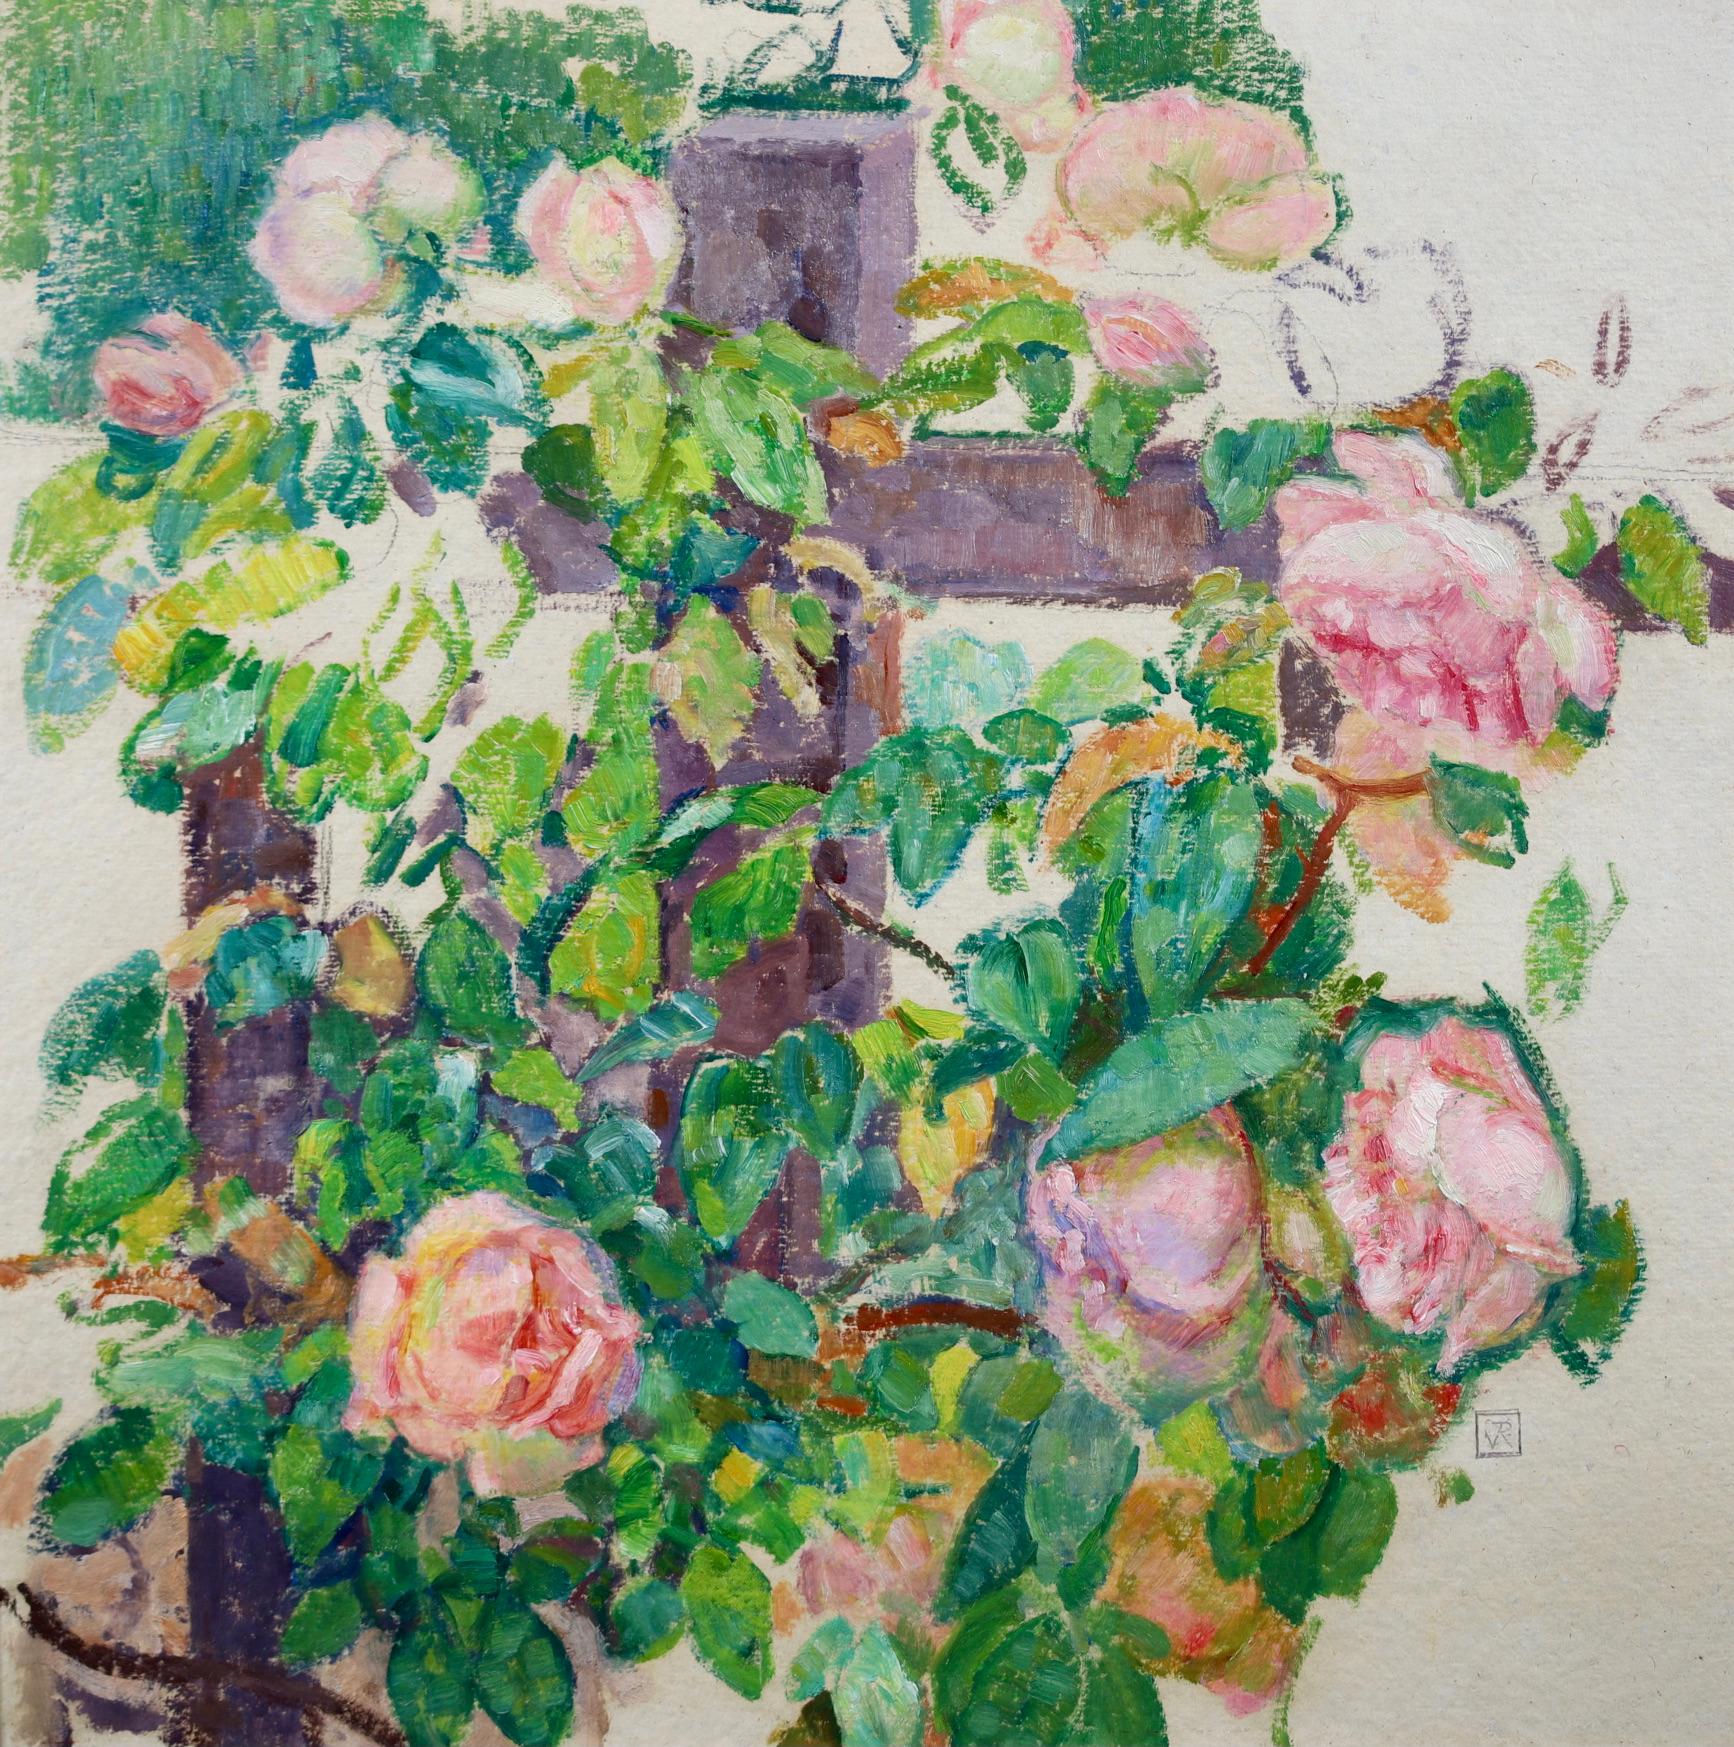 Magnifique huile sur papier marouflé sur toile vers 1905 du peintre néo-impressionniste français Theo Van Rysselberghe représentant un rosier grimpant - le rose des fleurs contrastant avec le vert et le jaune des feuilles. 

Signature :
Signé en bas